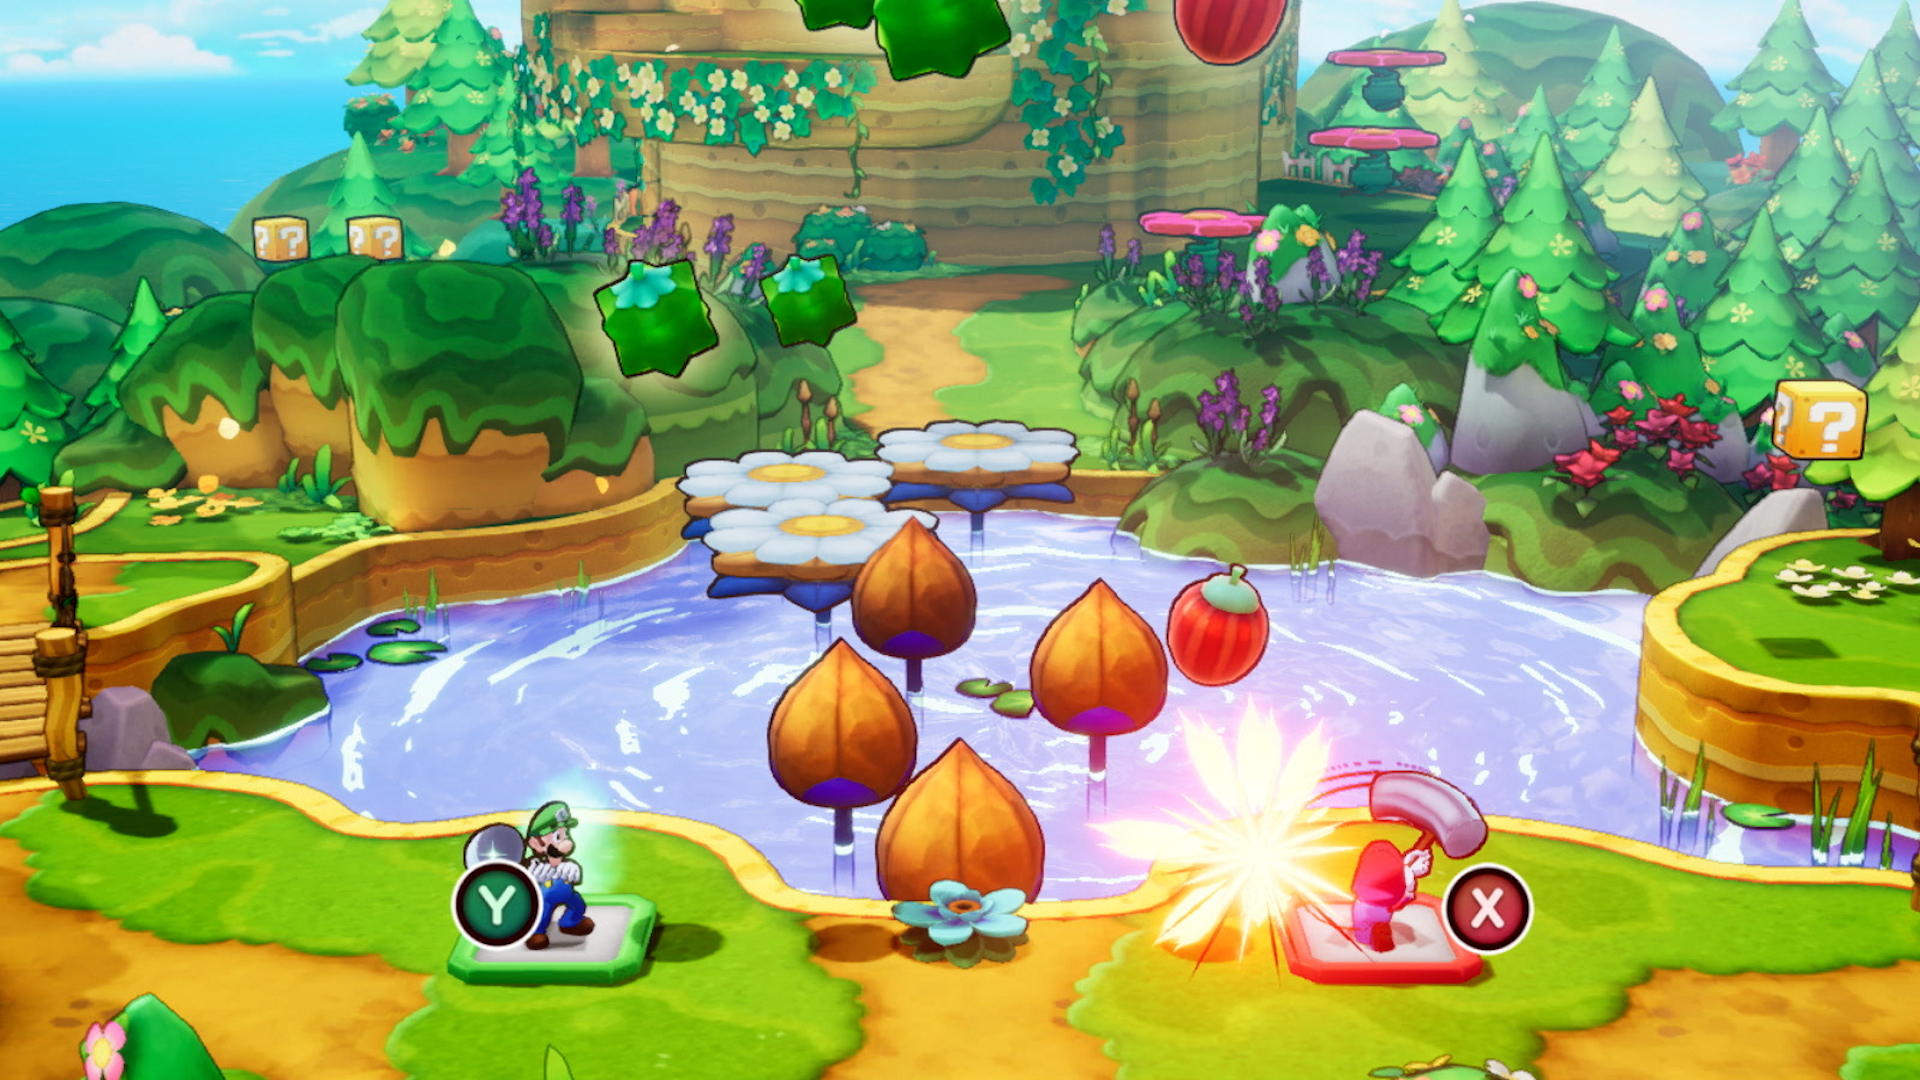 Mario et luigi l epopee fraternelle screenshot 15 15